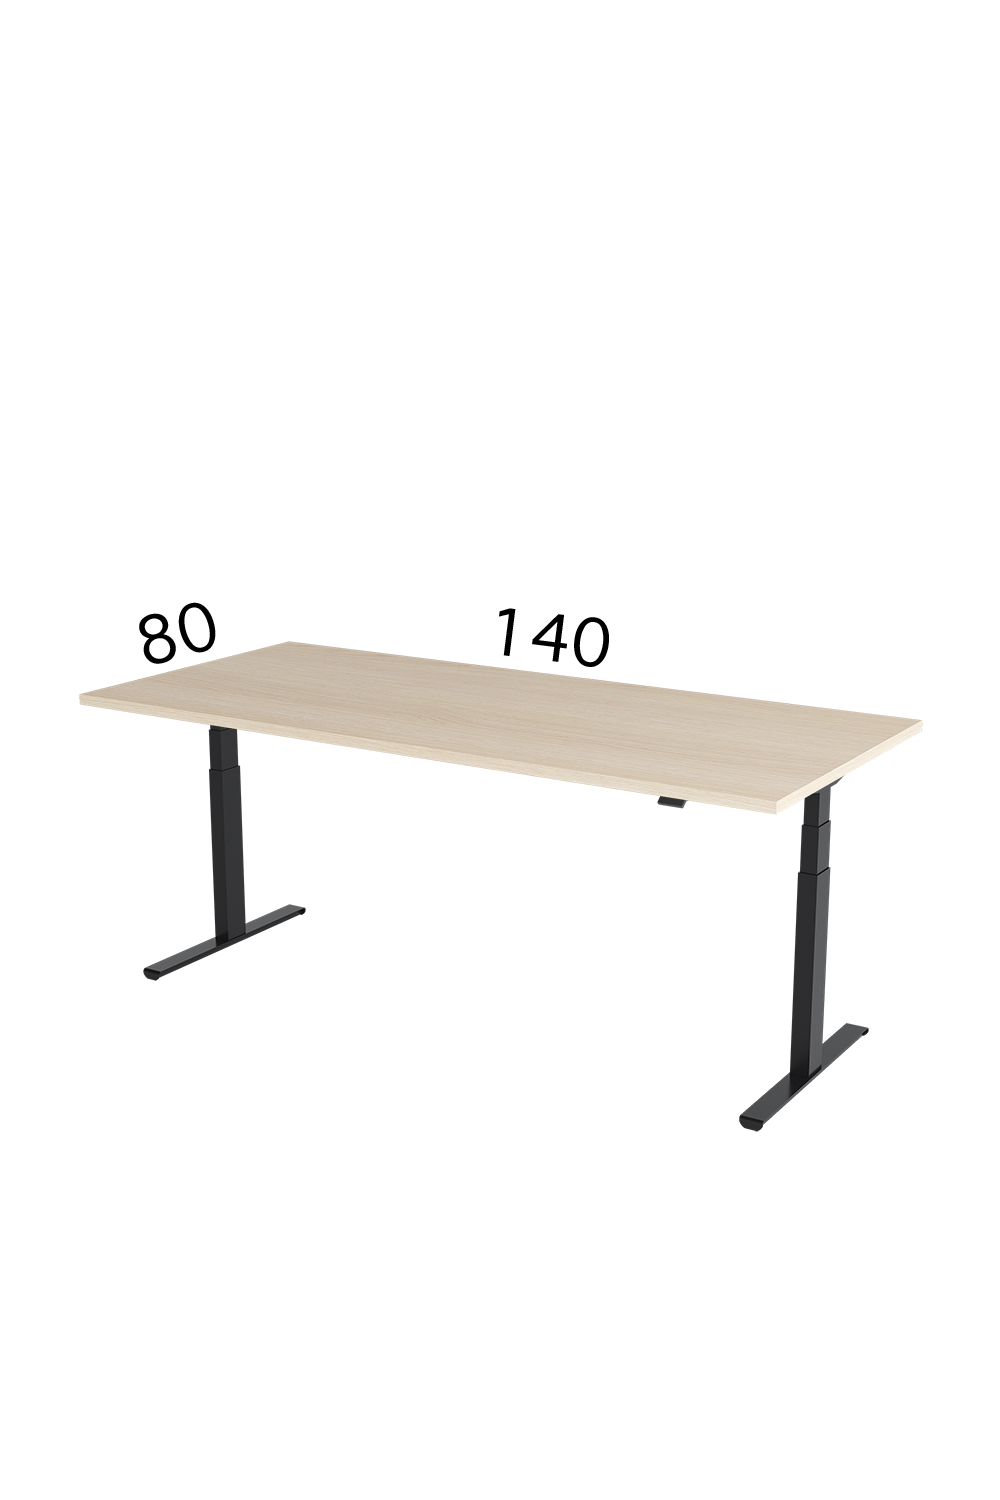 Height adjustable desk, Height-adjustable table, adjustable height desk, adjustable heigth table, adjustable desk, reguliuojami stalai, vildika katalogas, darbo stalų gamyba, vildika stalai, pakeliamas stalas, reguliuojamo aukščio stalas skelbiu, reguliuojamo aukščio stalas vaikamselektra valdomas stalas, stok sėsk, aktyvi darbo vieta, augantis stalas, kintančio aukščio stalas, 5 metų garantija, aukščiausia kokybė, pakeliami stalai,stacionarus stalas, ergonominis stalas, eggonominiai stalai, reguliuojamo aukščio mechanizmas, stalai su pakeliamu mechanizmu, elektrinis stalas, elektra pakeliami stalai, ergonomiski stalai,